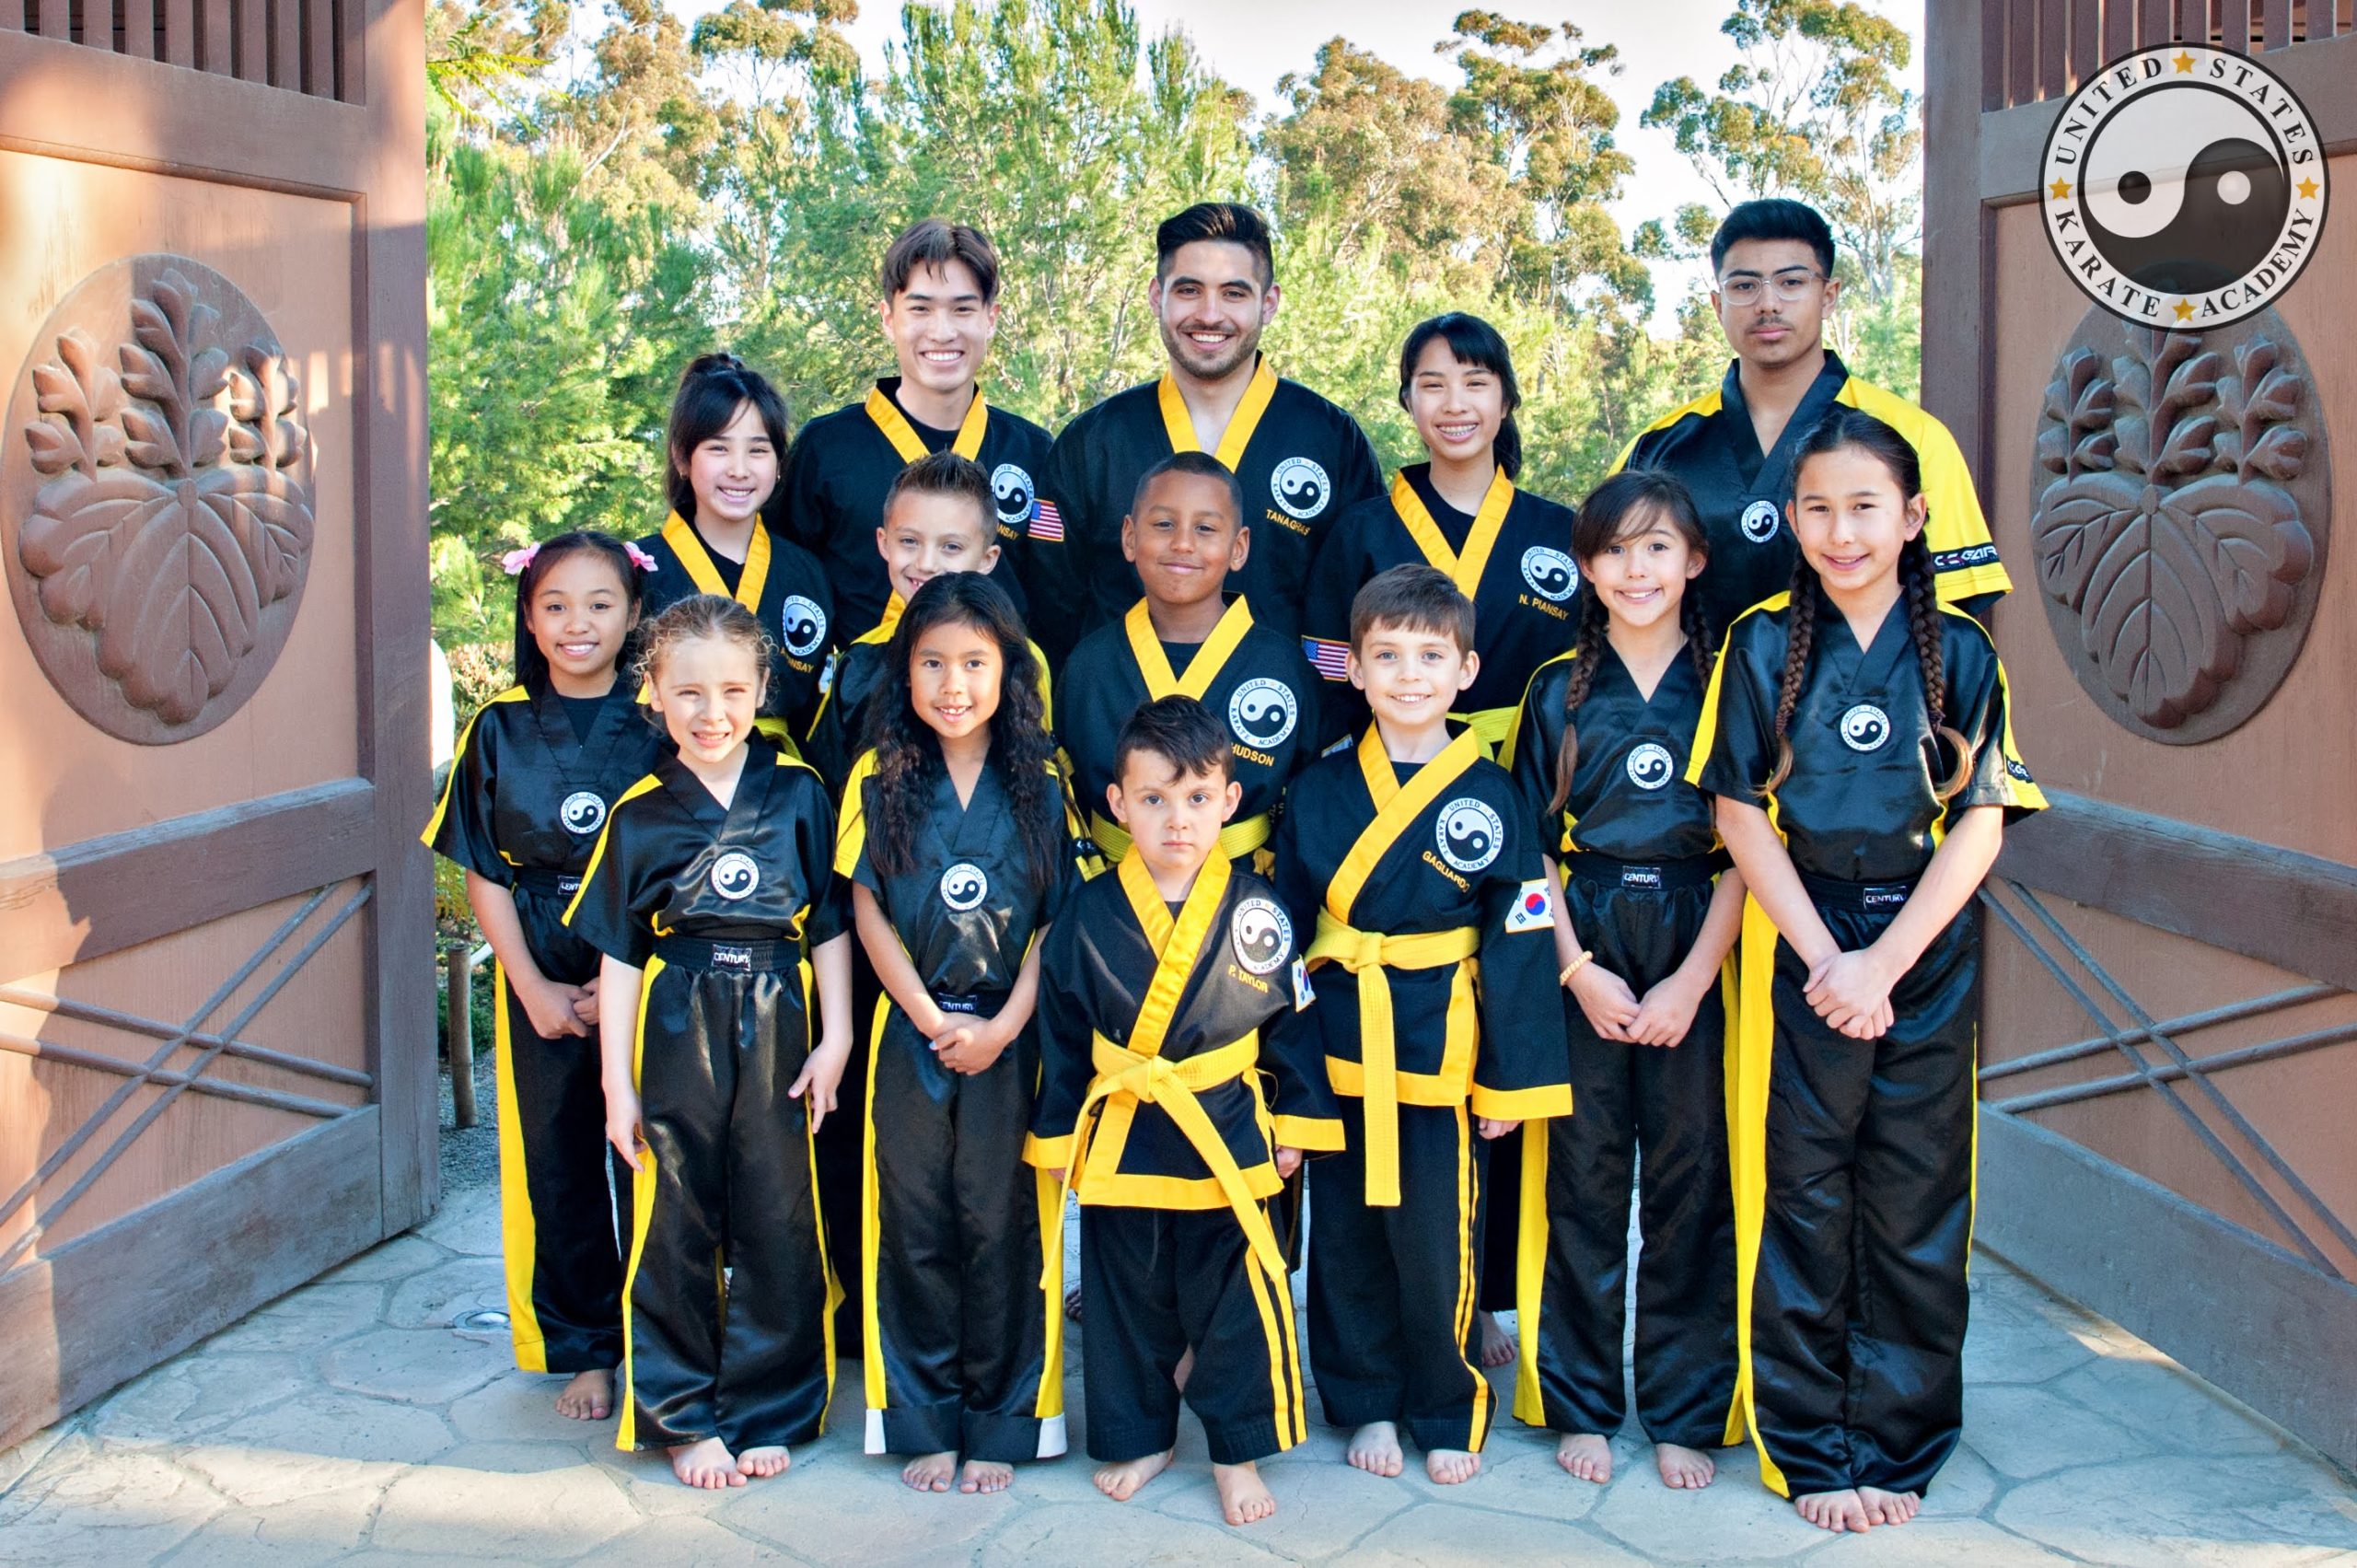 Martial Arts Students